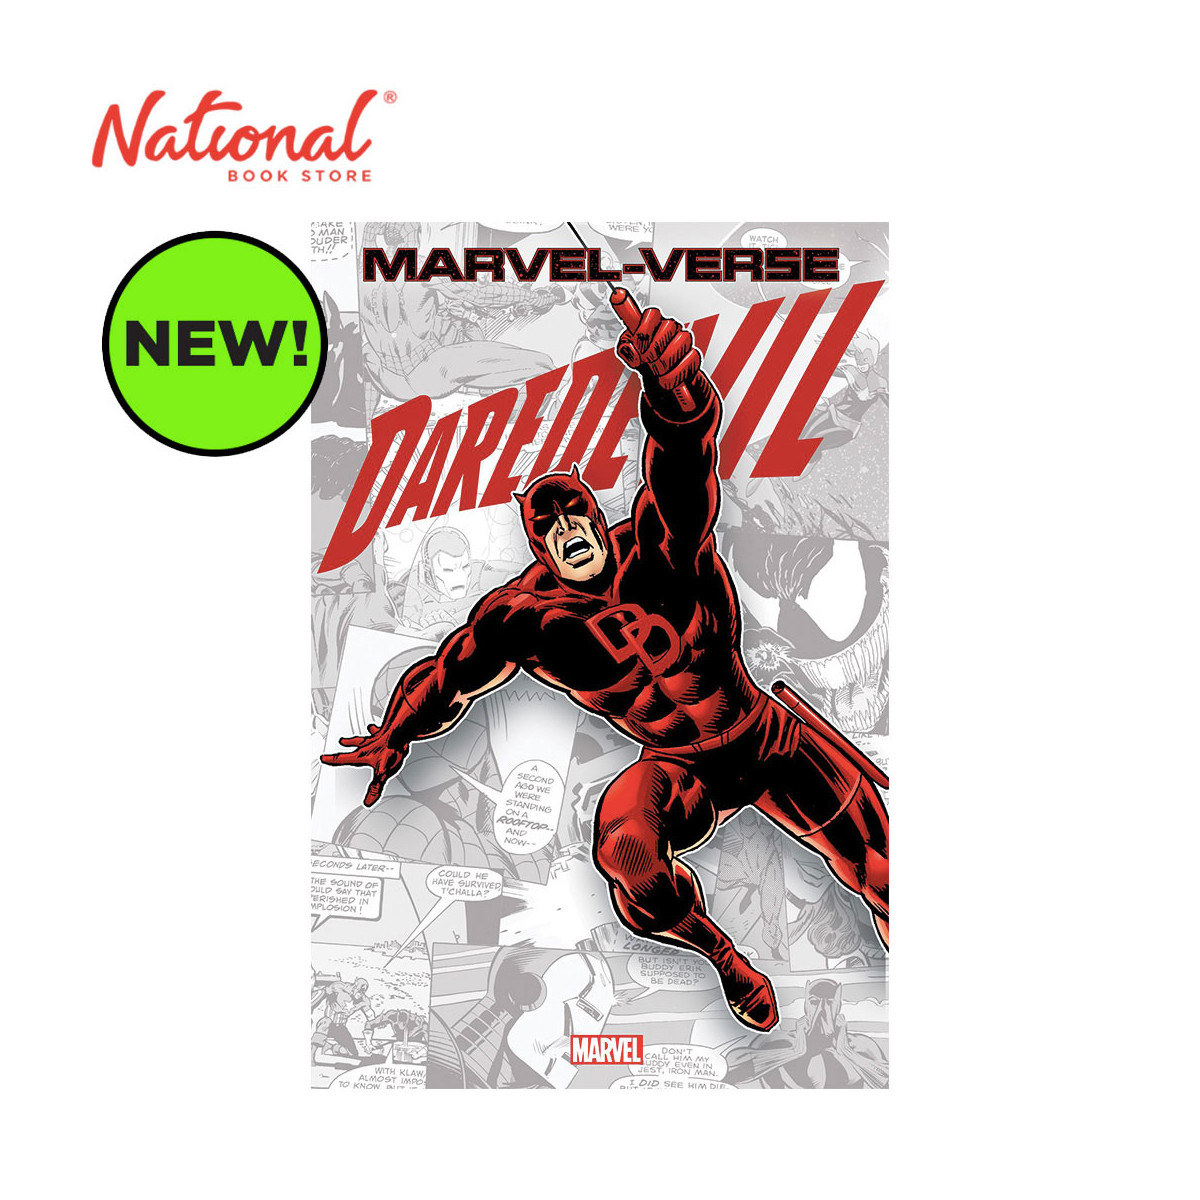 *PRE-ORDER* Marvel Verse: Daredevil by Bob Budiansky - Trade Paperback